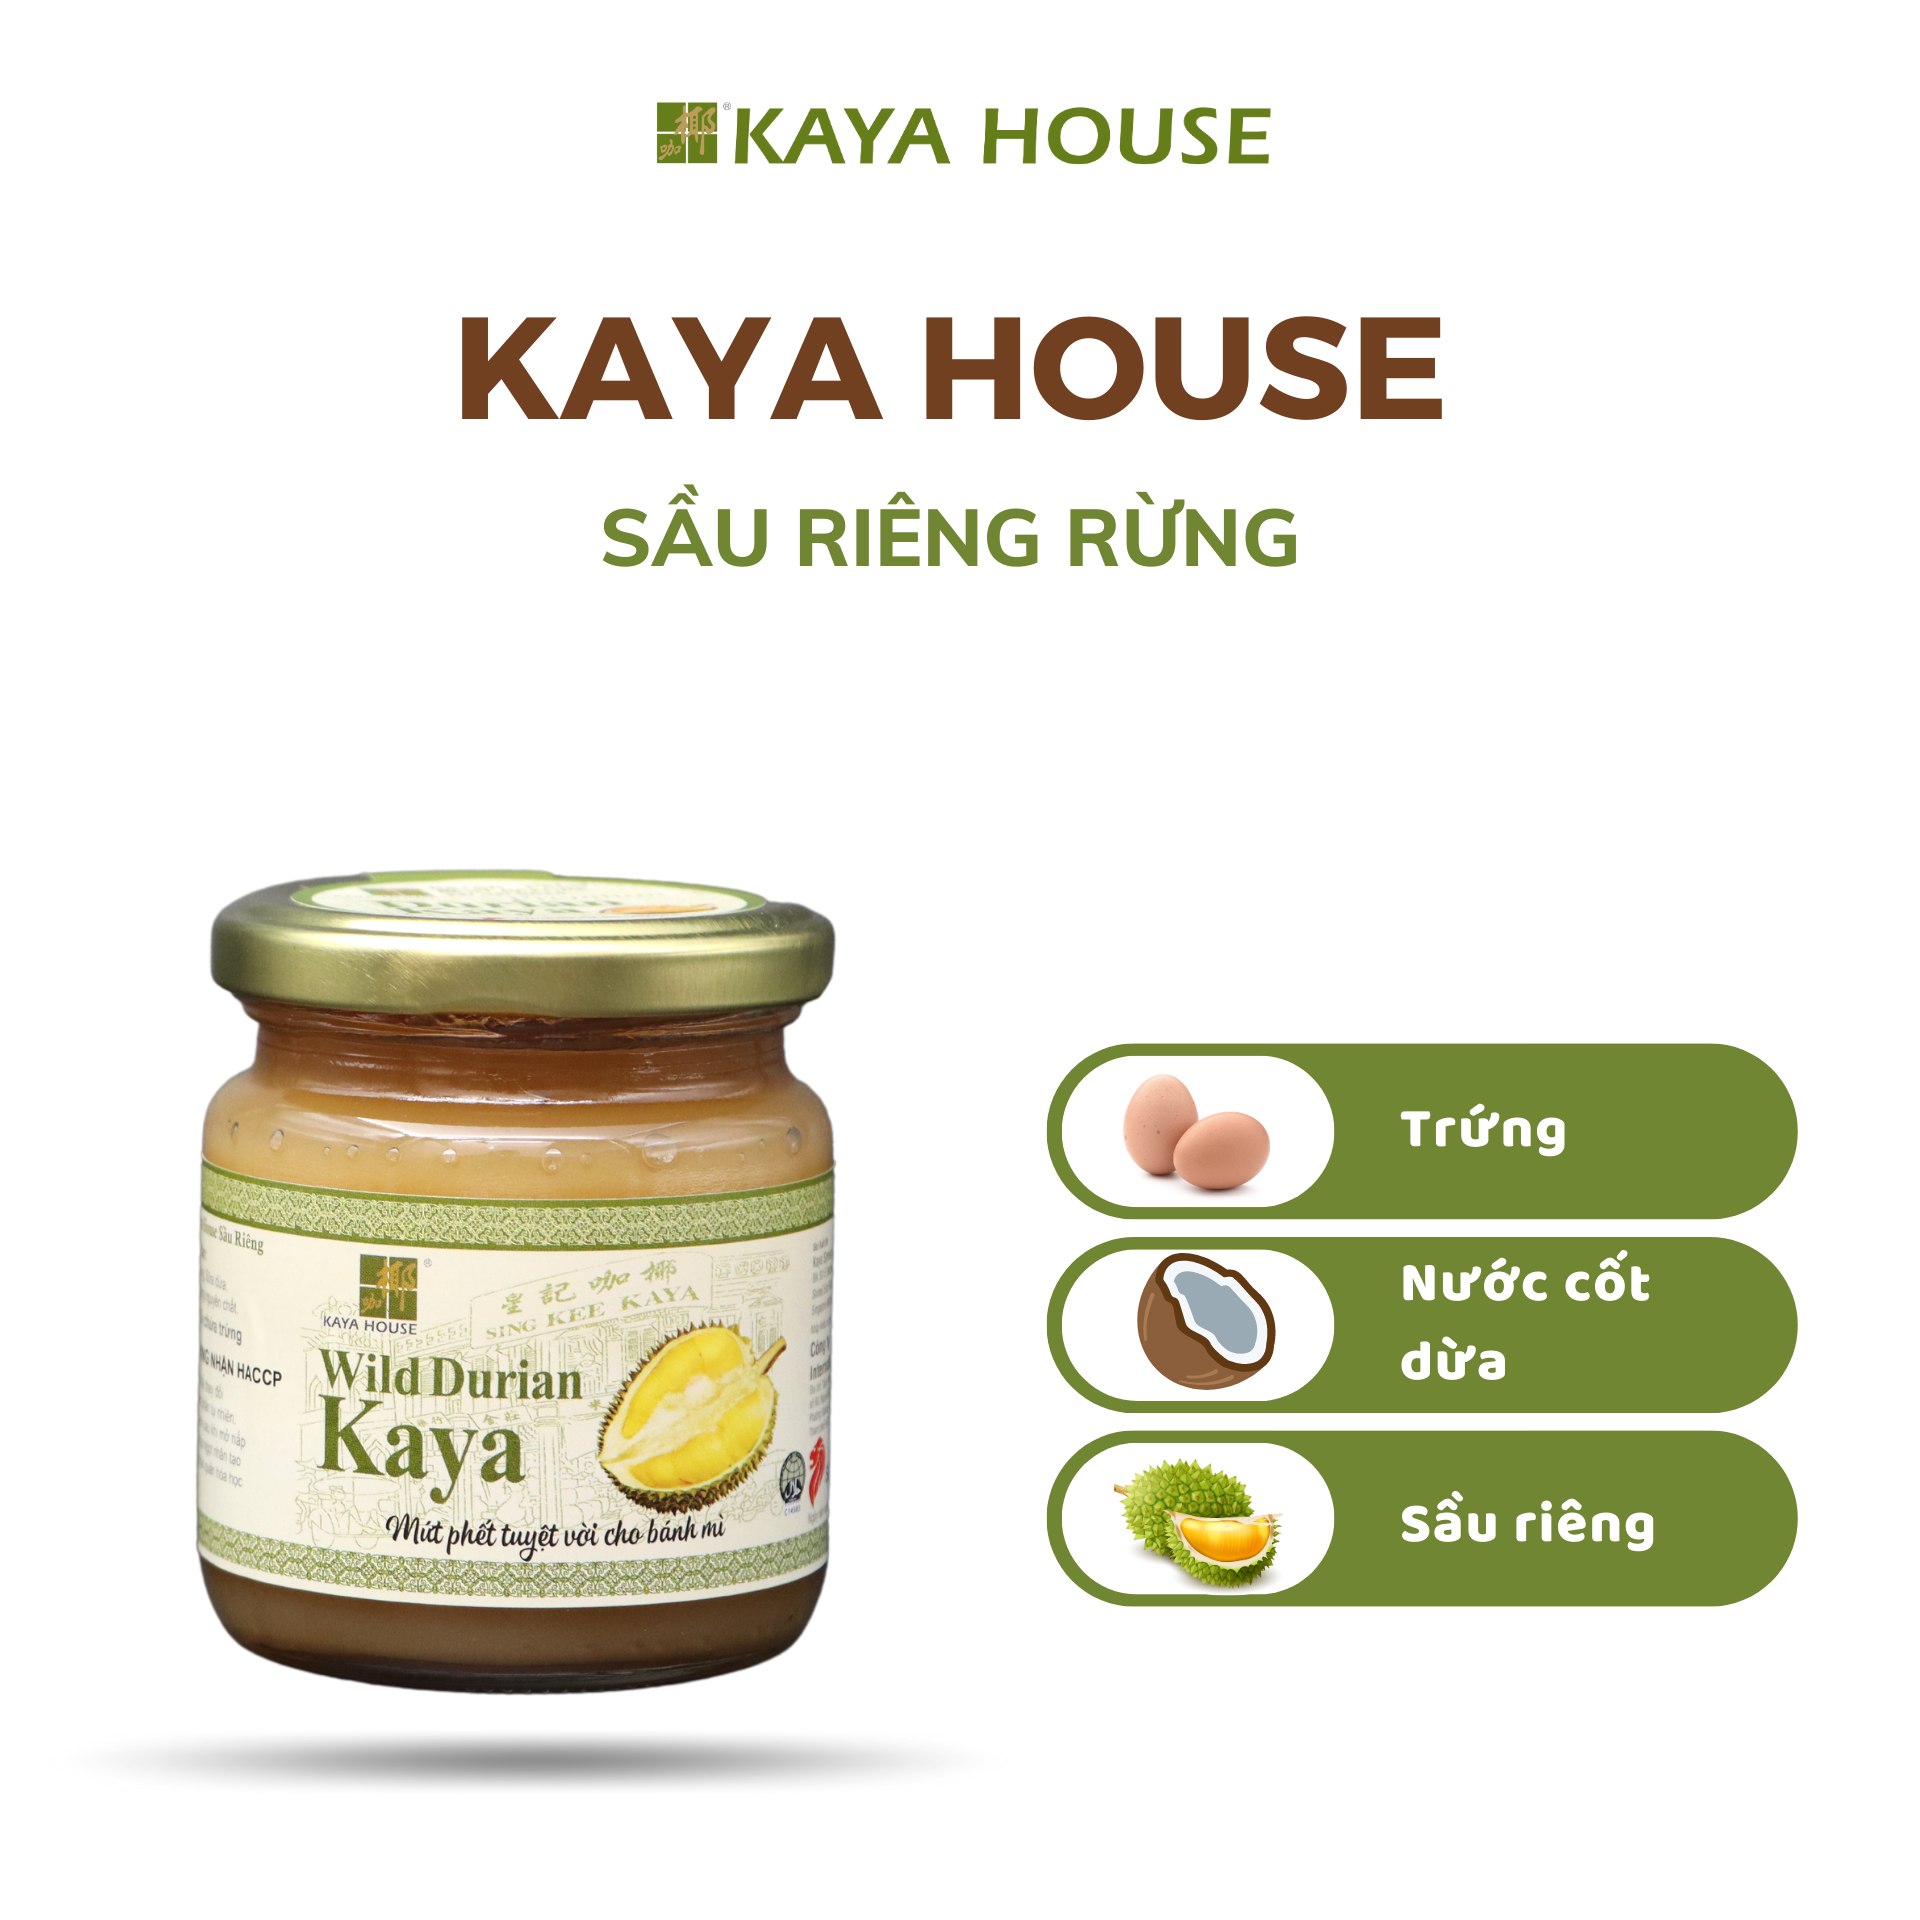 Mứt Kaya Singapore Sầu riêng hũ 225g - Kaya House - Ăn kèm với Sandwich, làm nguyên liệu nấu ăn